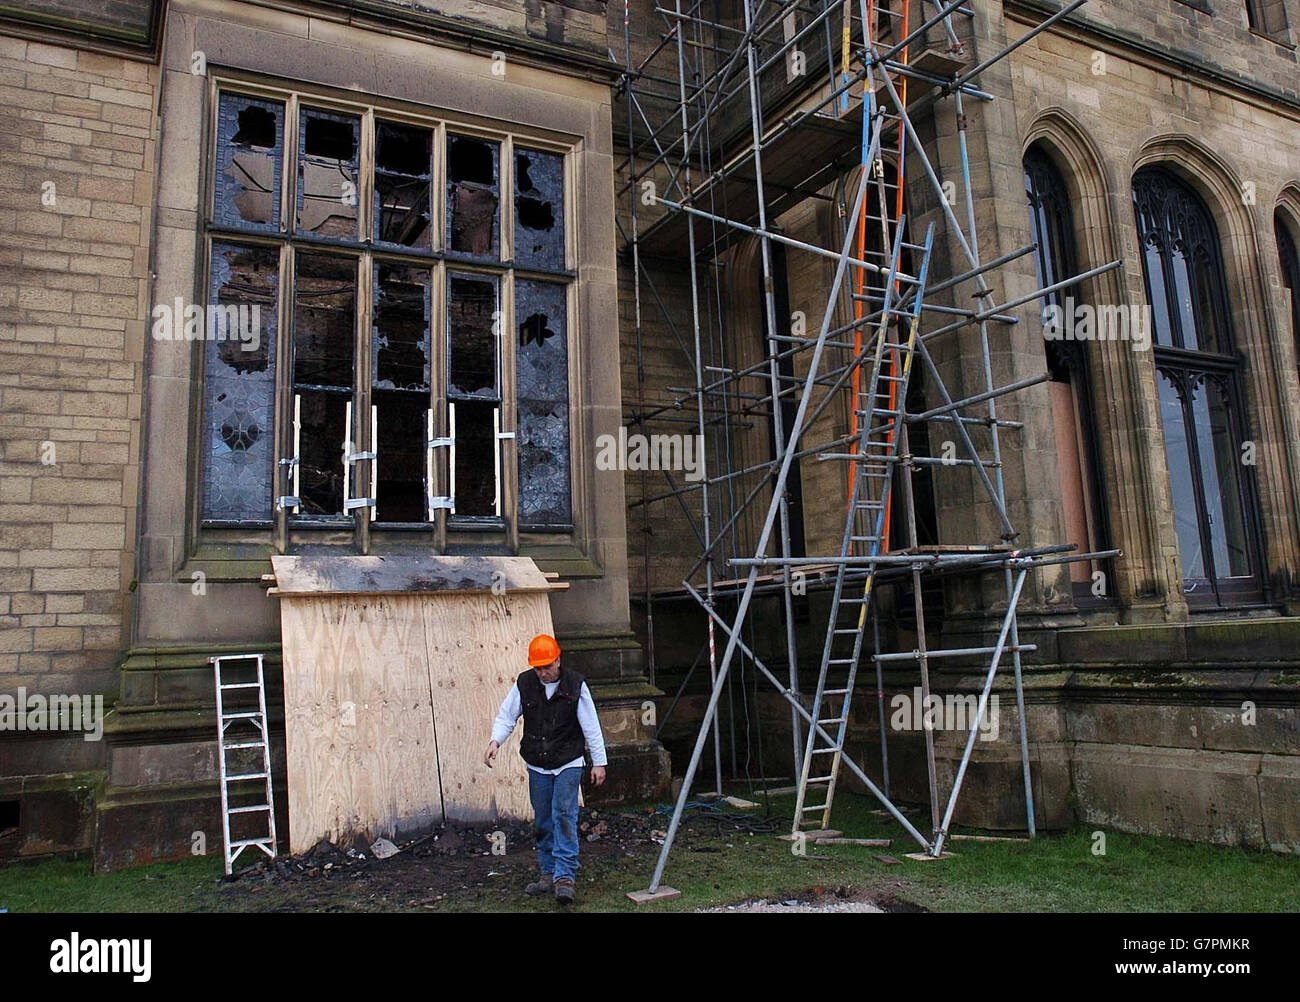 Feuerschaden Im Allerton Castle. Nach einem Brand, der schwere Schäden am berühmten Gebäude verursacht hat, werden Reparaturarbeiten durchgeführt. Stockfoto